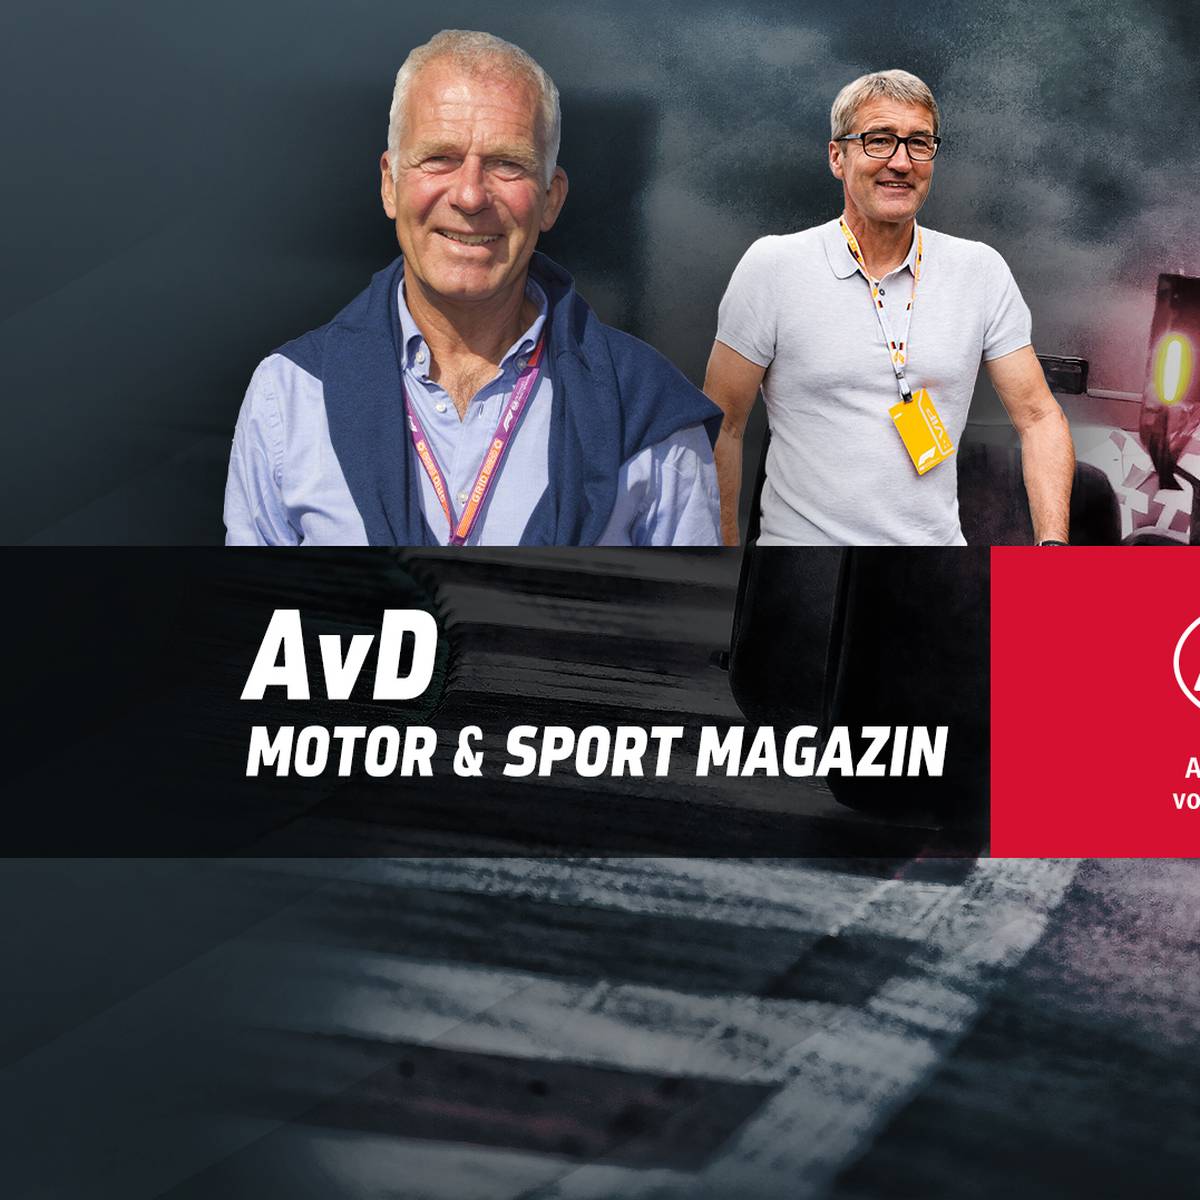 Das AvD Motor & Sport Magazin vom 19.06.2022 mit Bernd Schneider